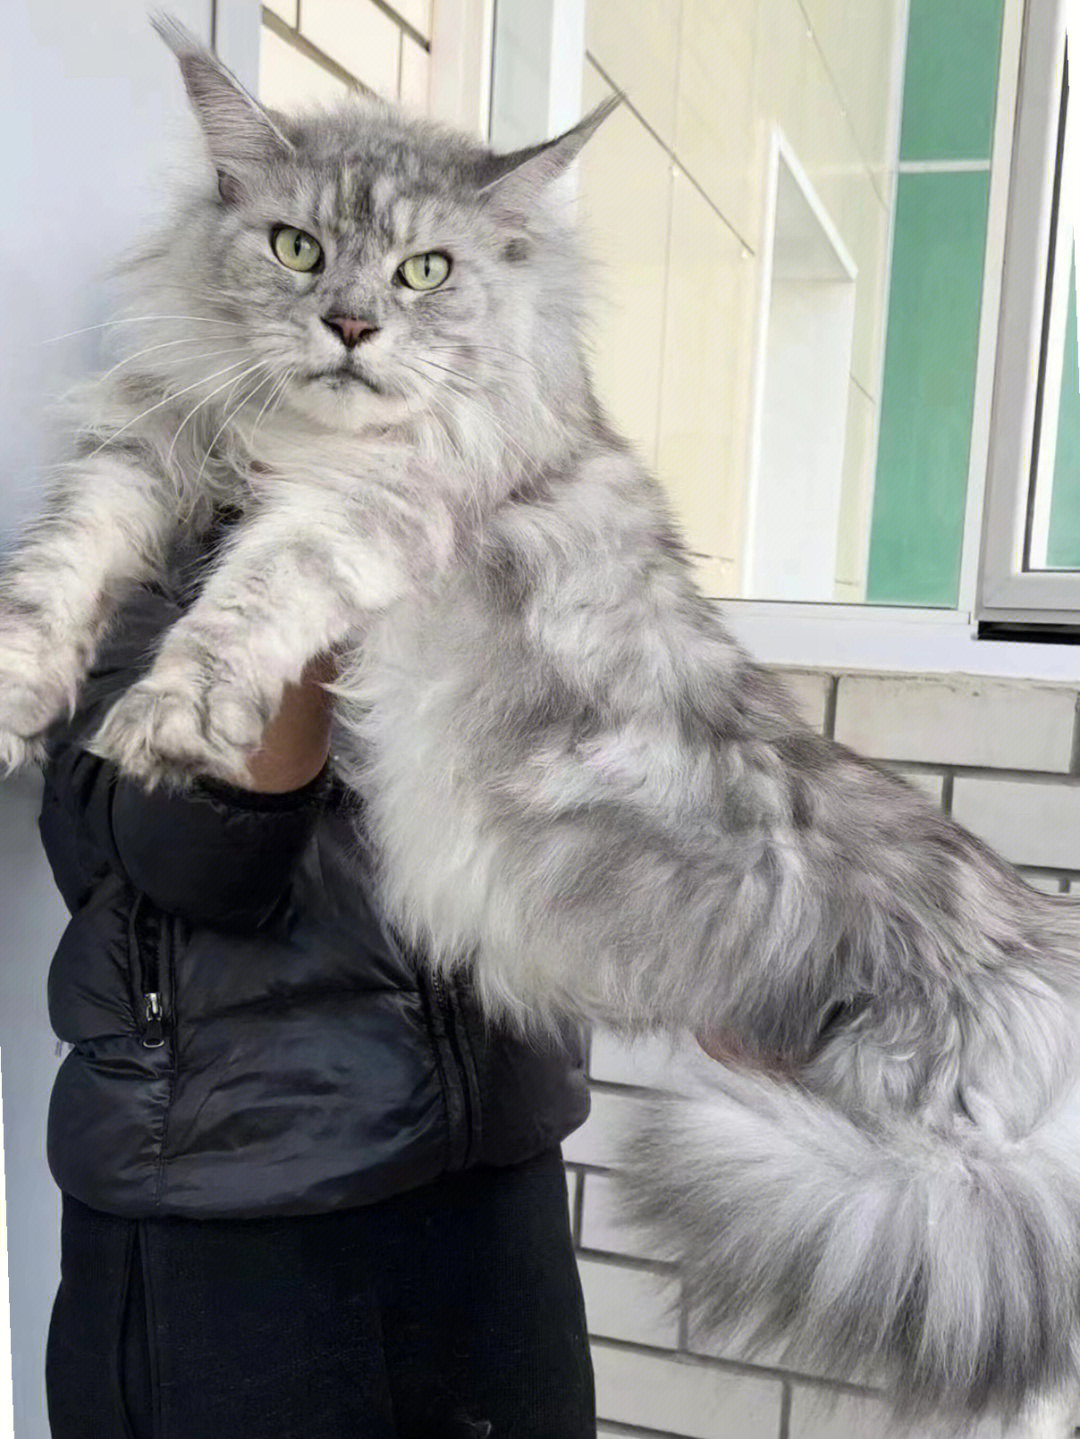 体型最大的猫图片